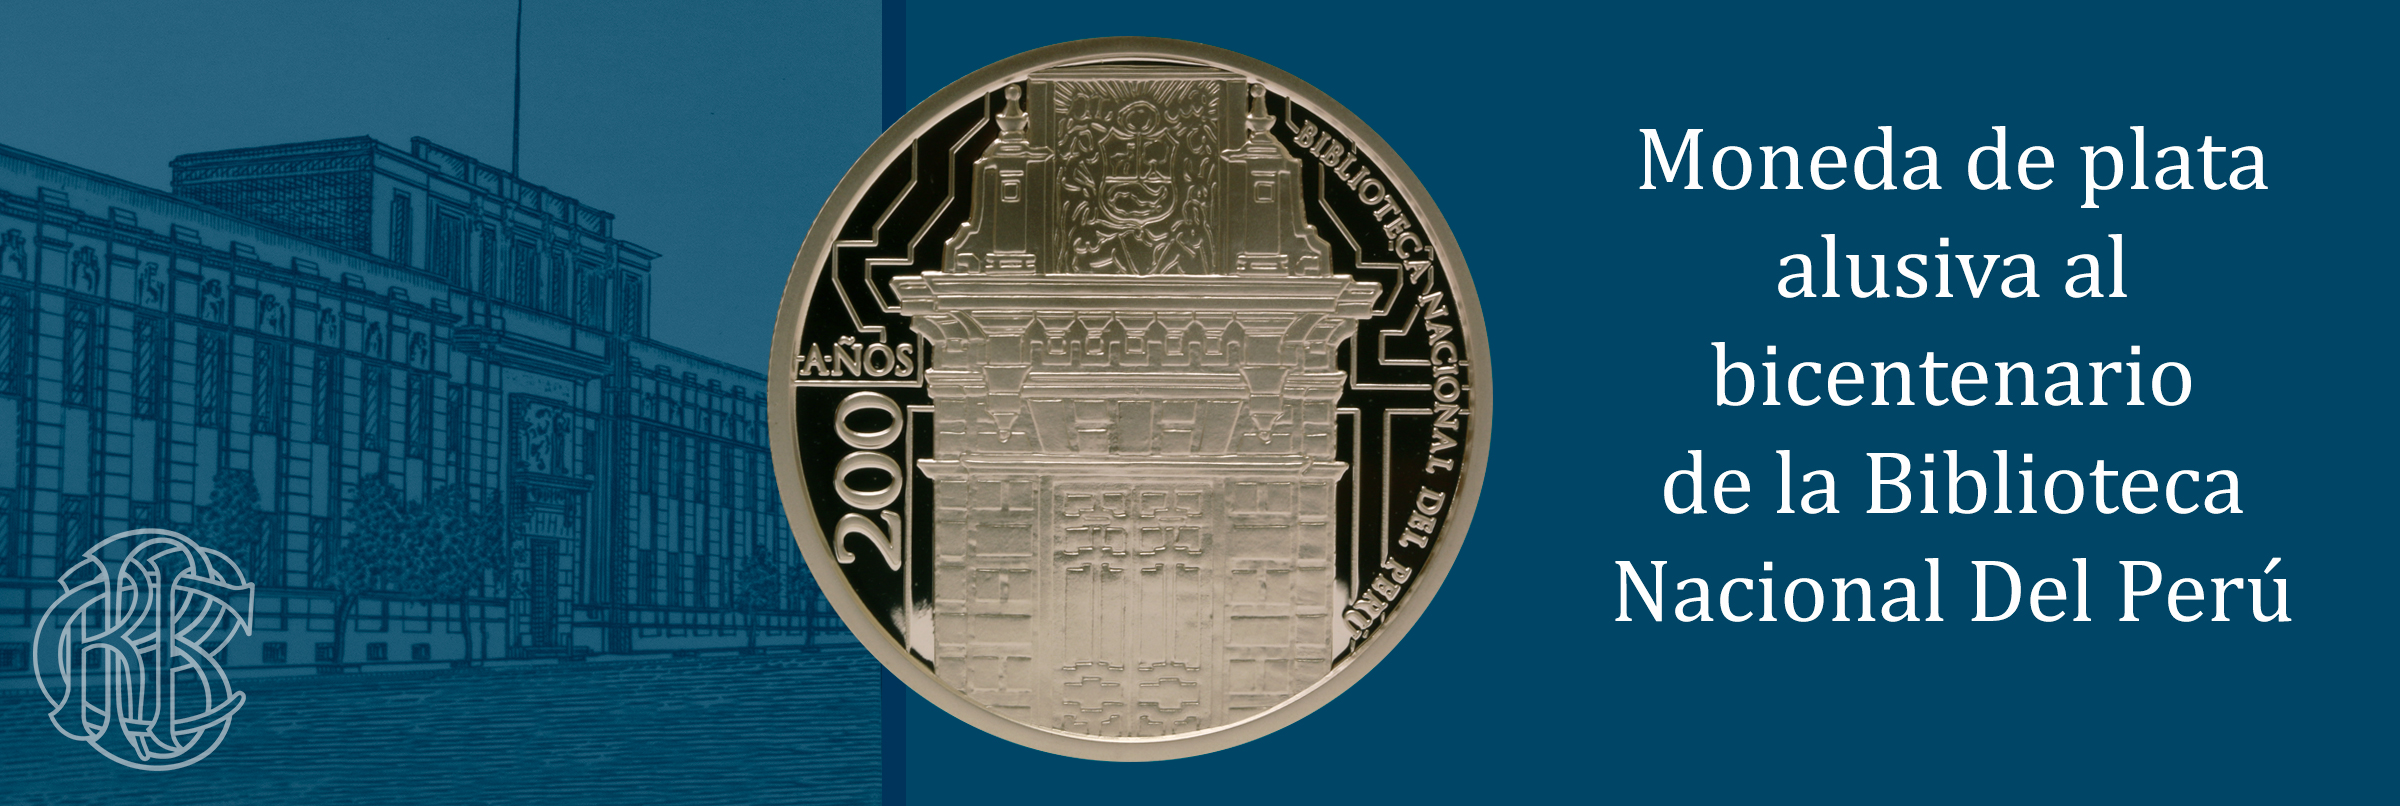 Moneda de plata alusiva a los 200 años de la Biblioteca Nacional del Perú.